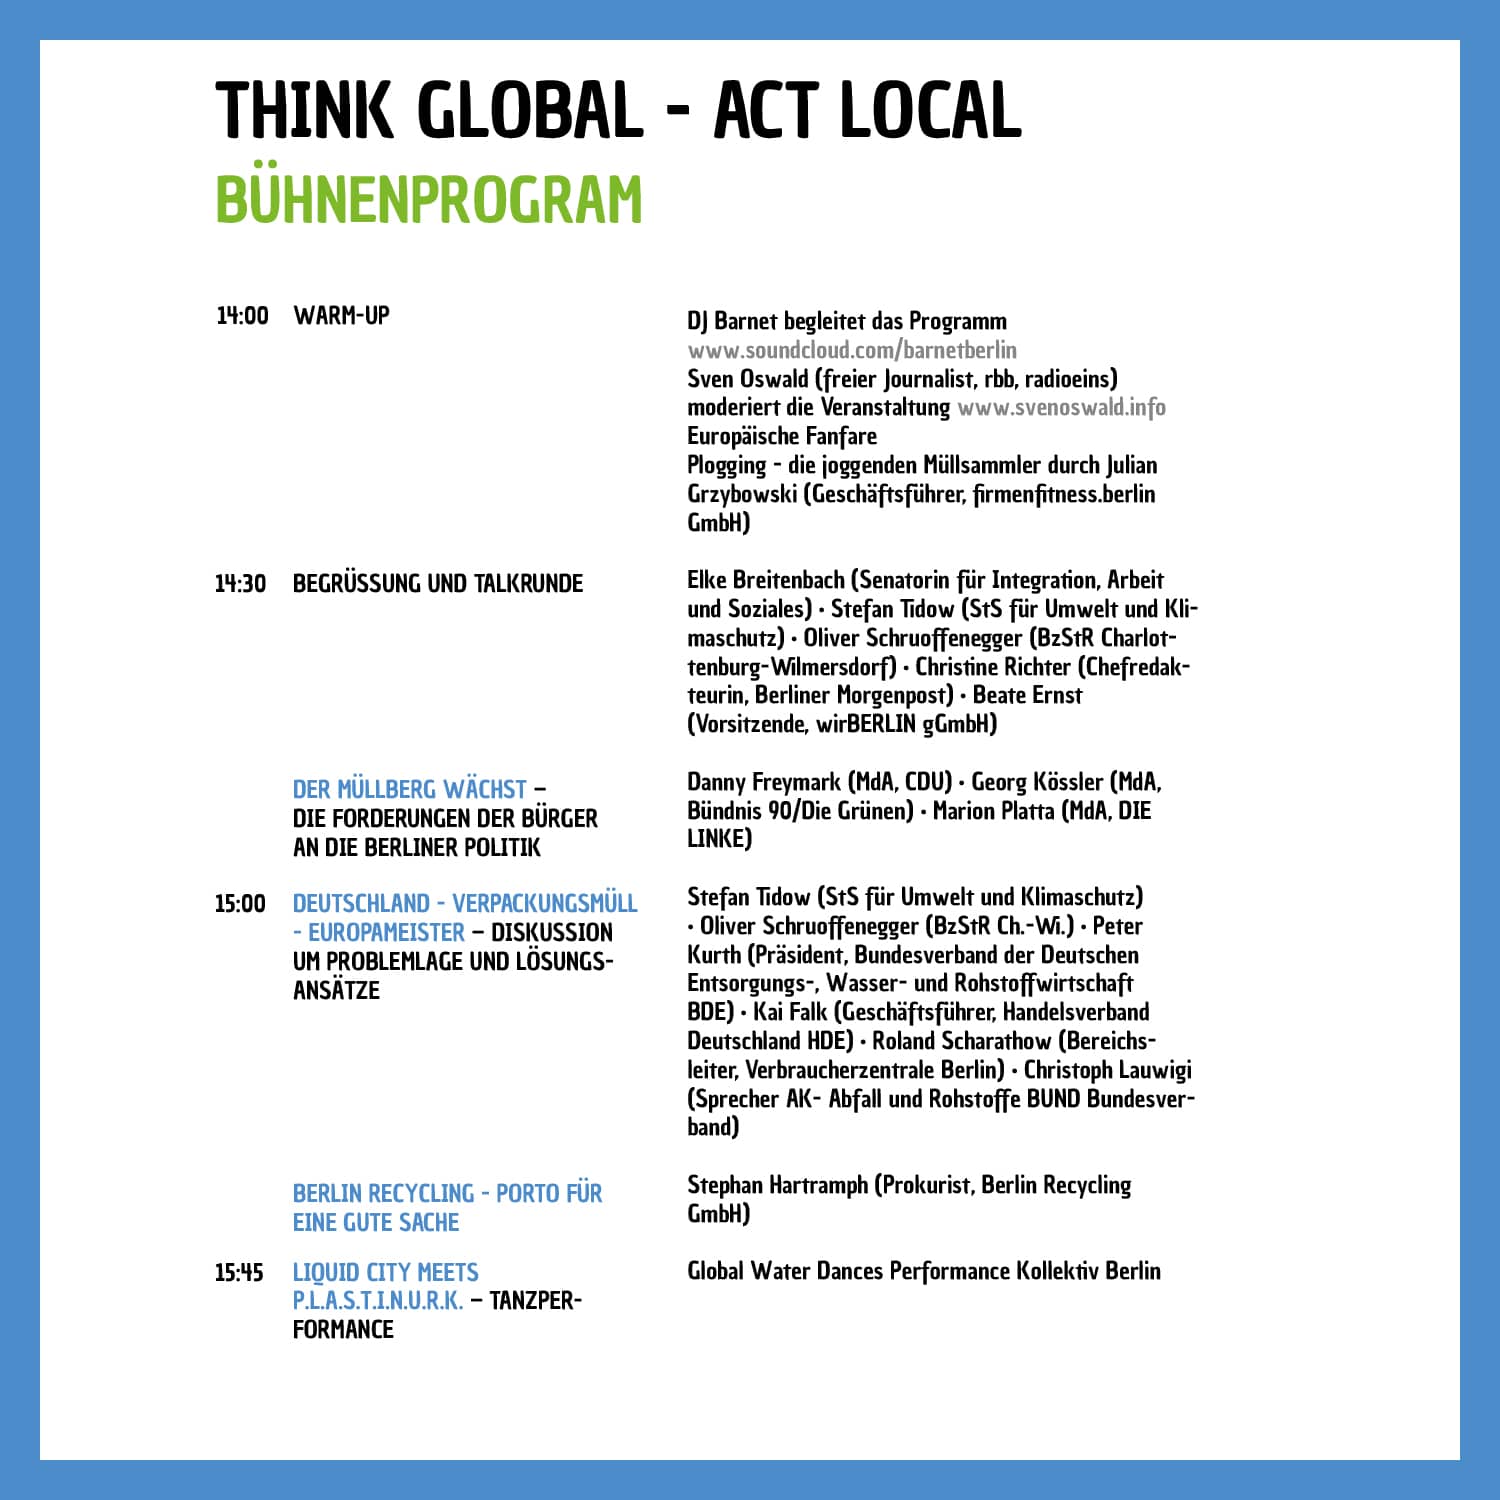 Bühnenprogramm vom Event think global-act local 2019